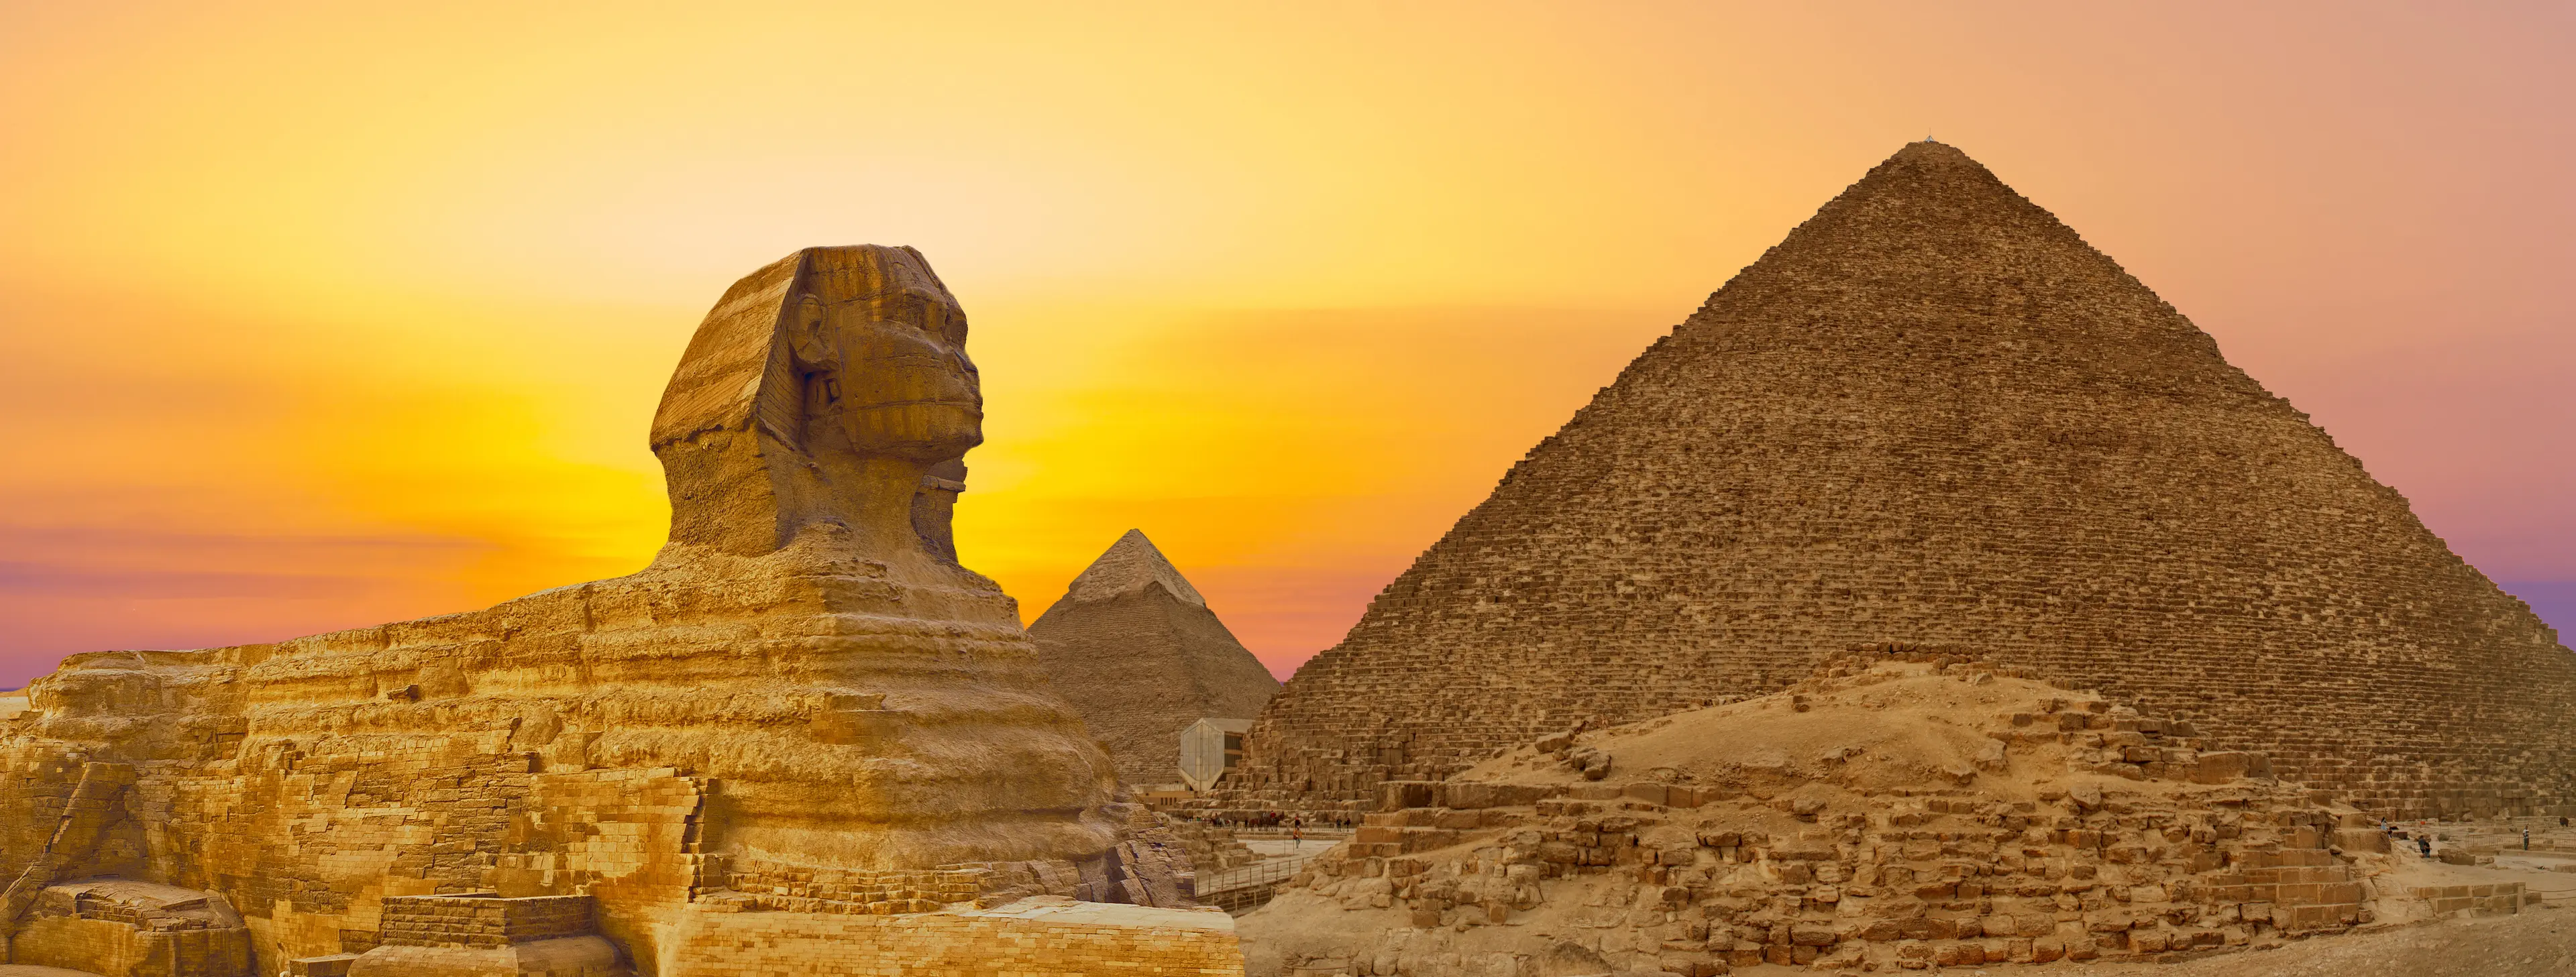 2-Day Cairo, Egypt Exploration Itinerary